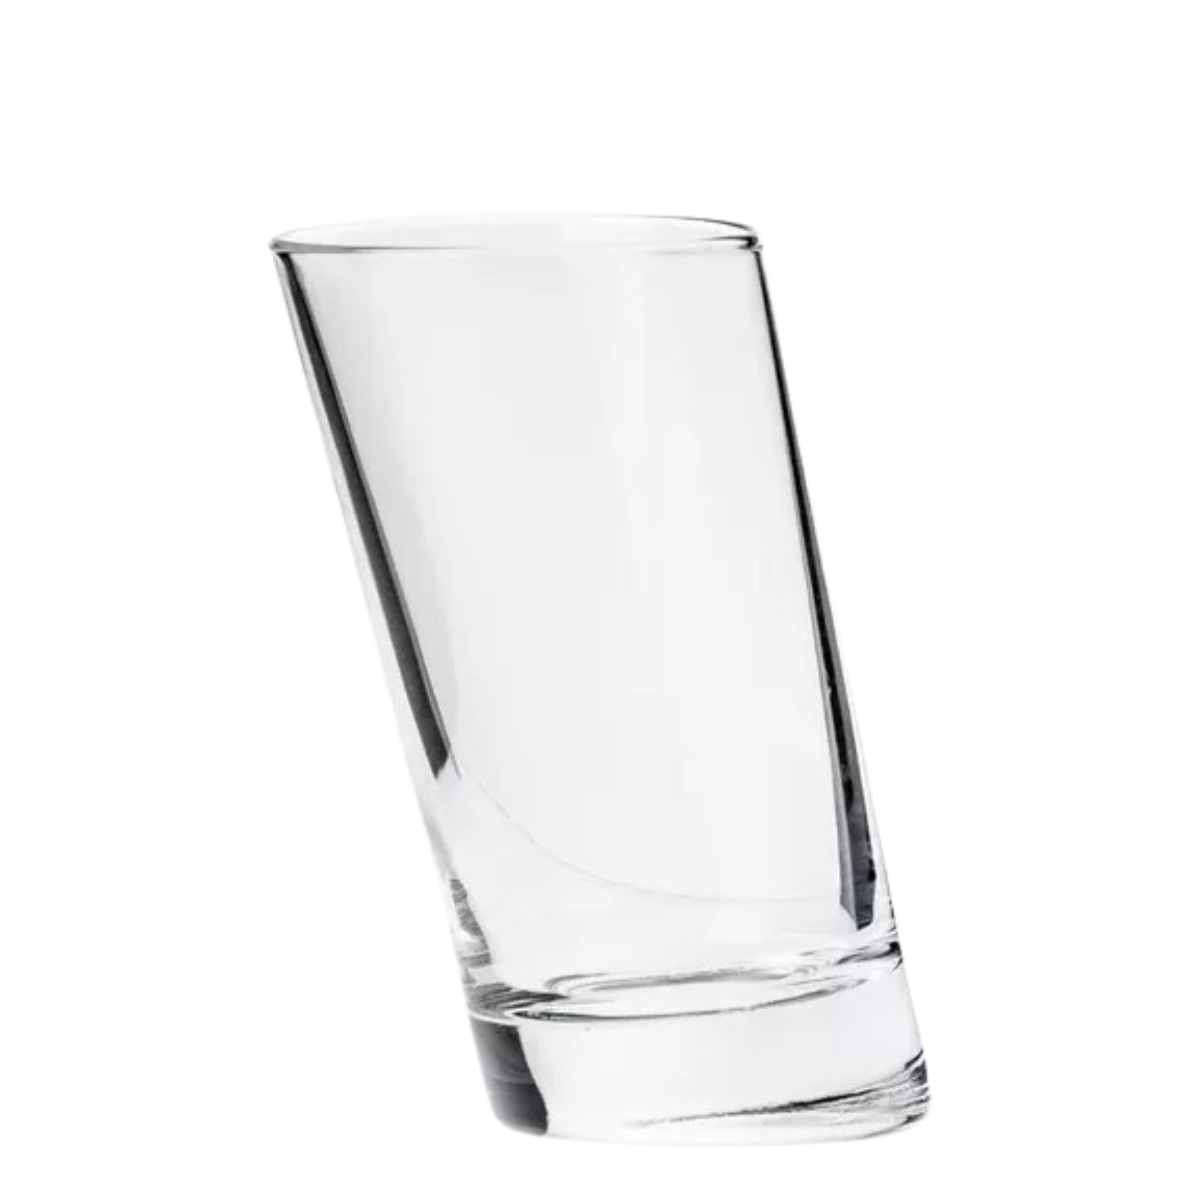 /products/pisa-juego-de-6-vasos-de-vidrio